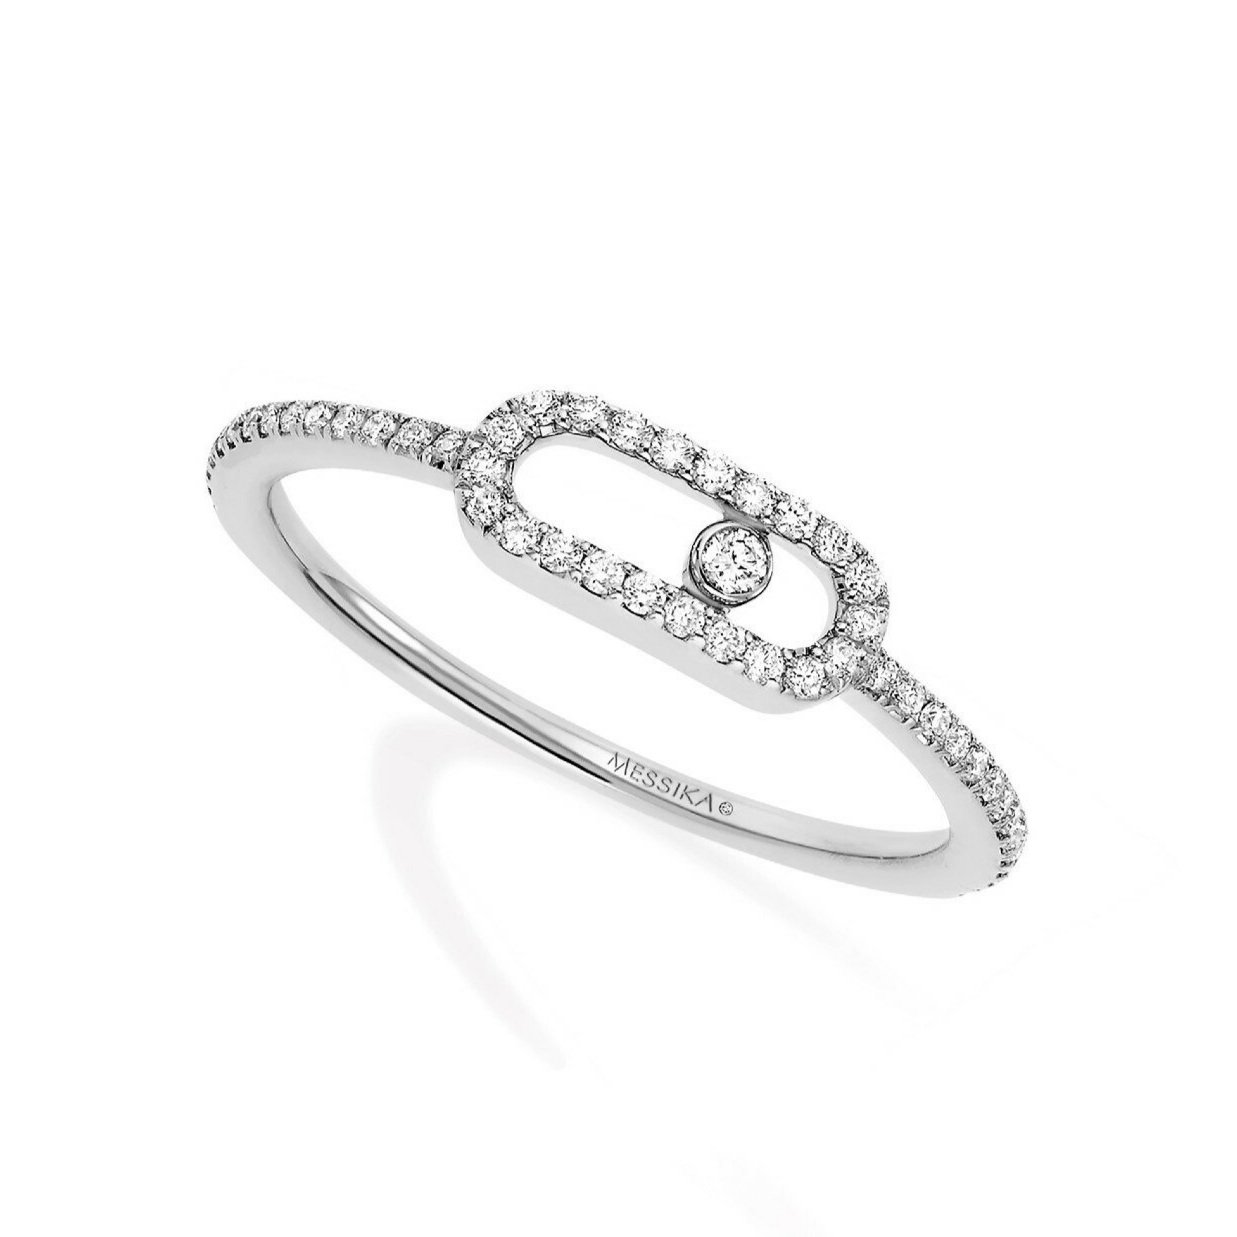 Saint Tropez: Messika Paris “Move Uno” pavé diamond ring, $1,640